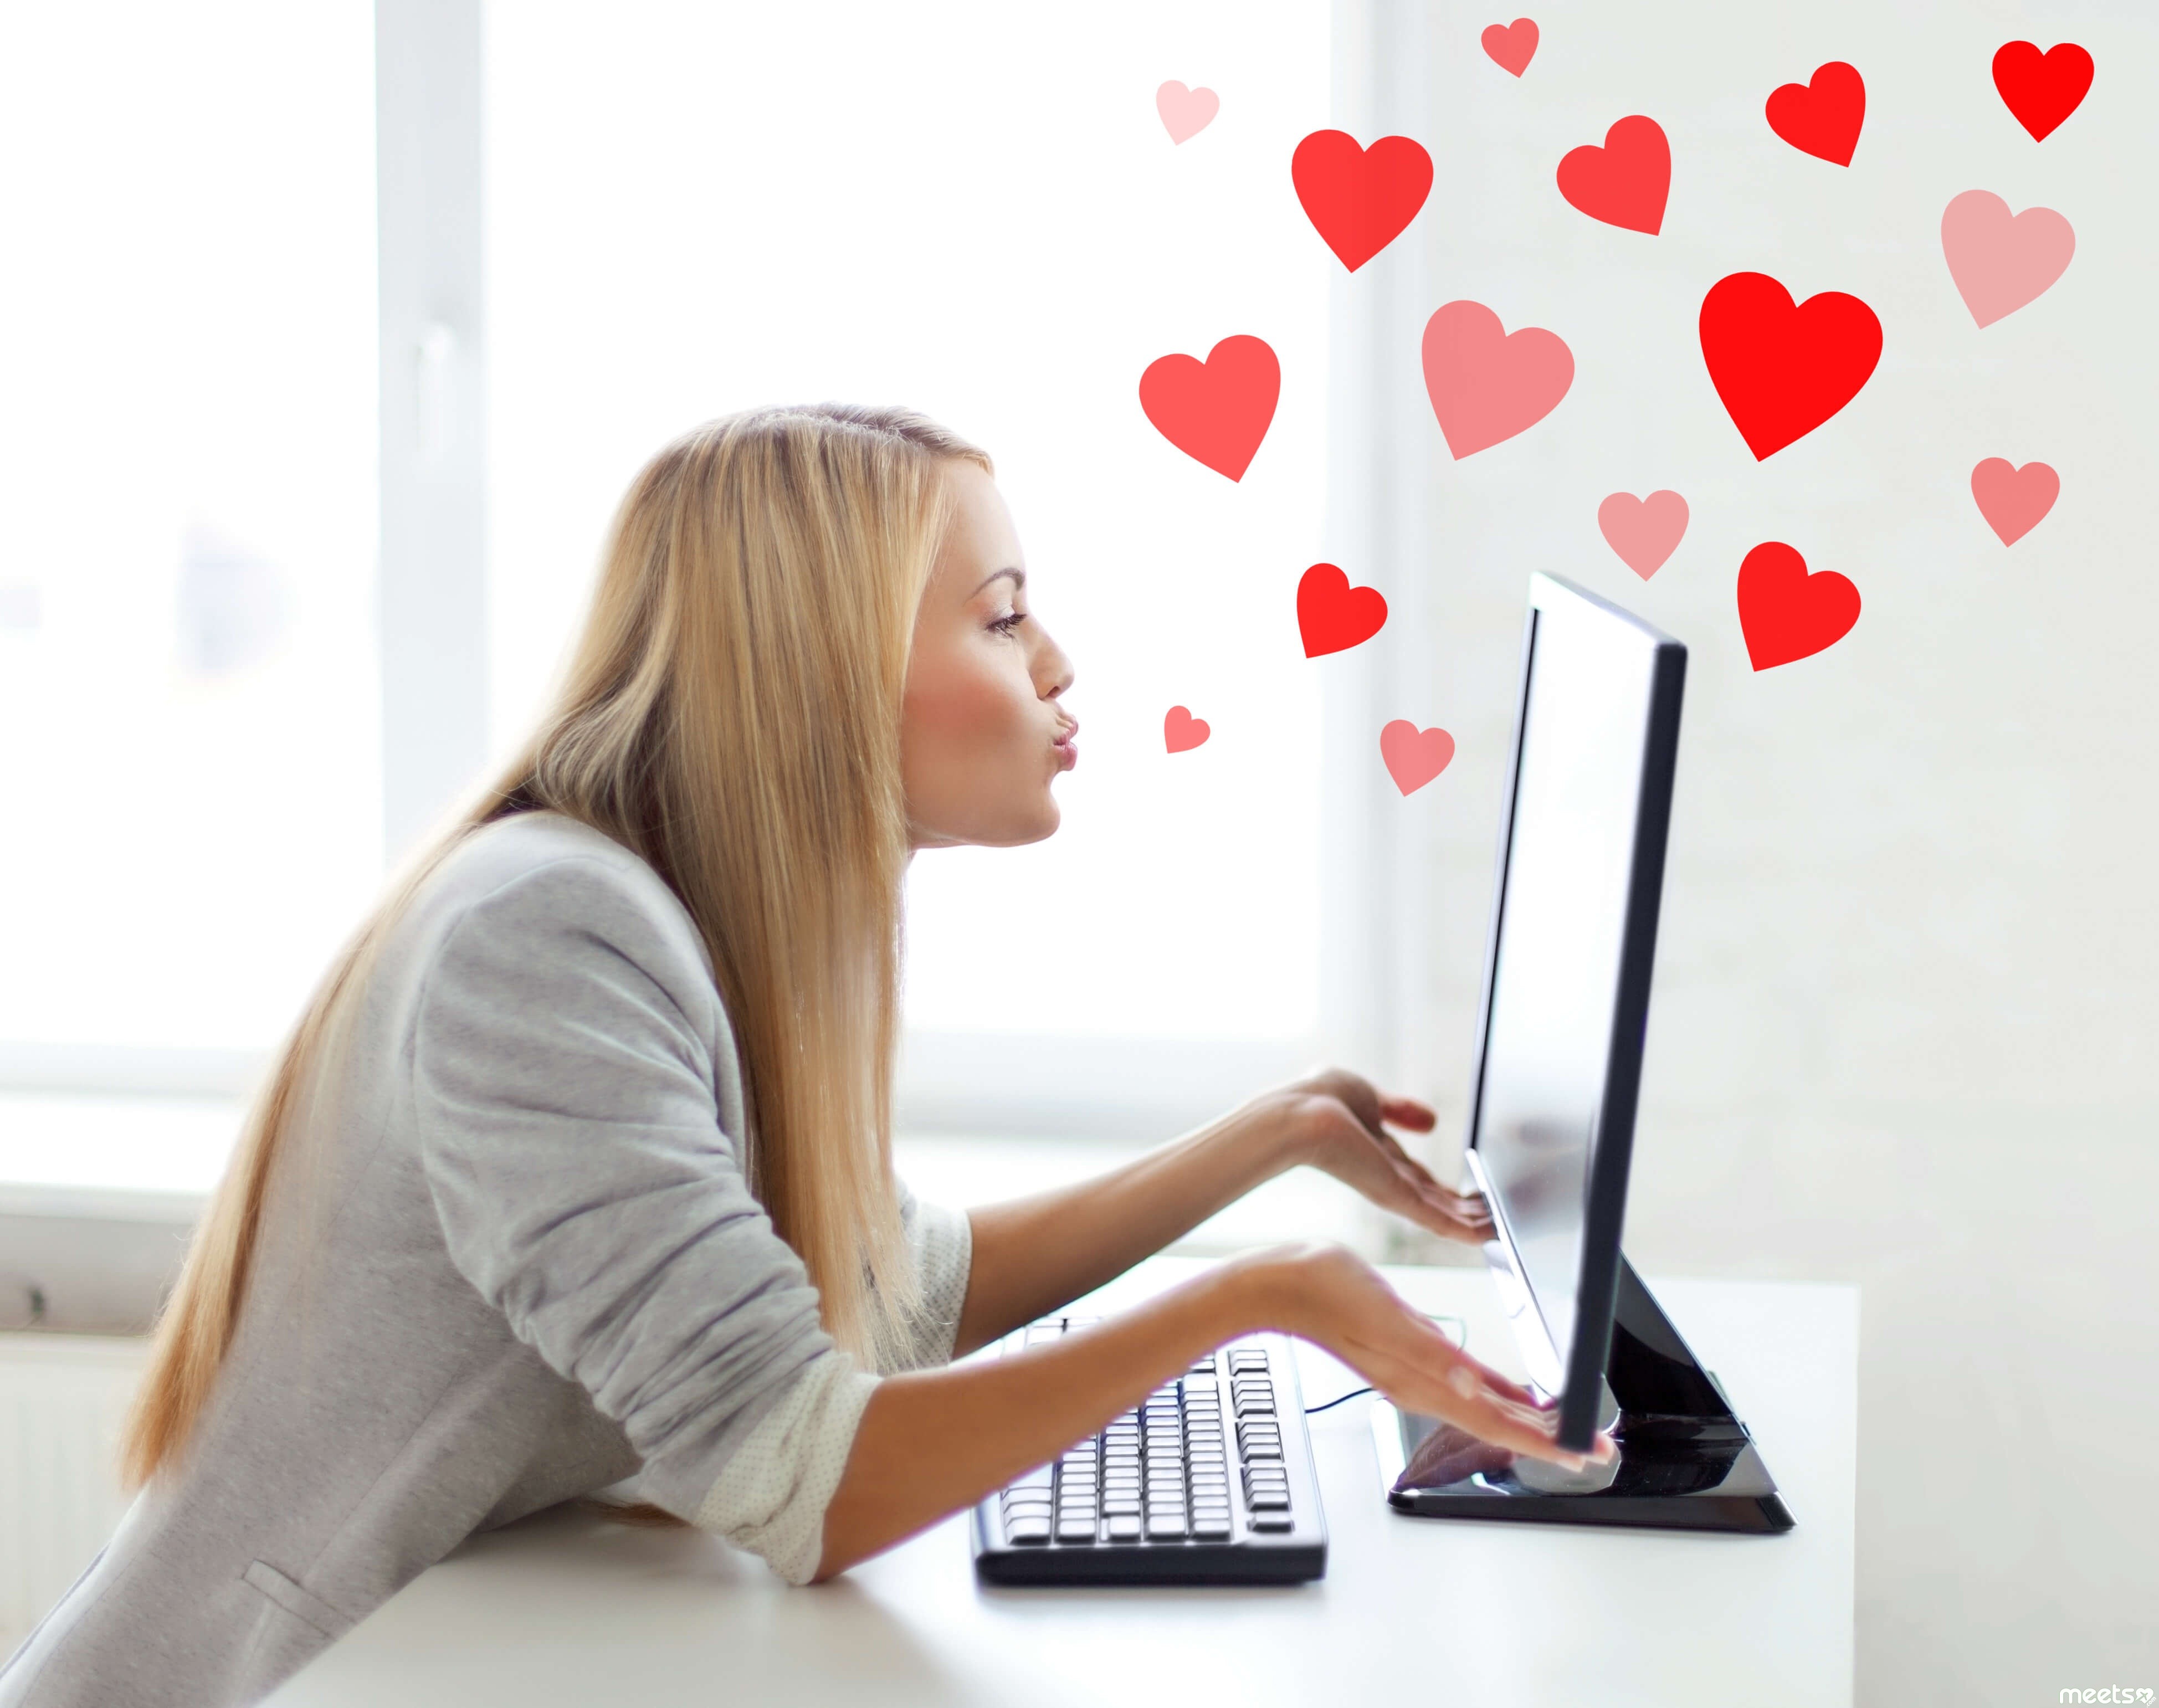 Сайт знакомств флирт найти свою любовь. Интернет любовь. Общение в социальных сетях. Любовь к клиенту. Разговор в интернете.